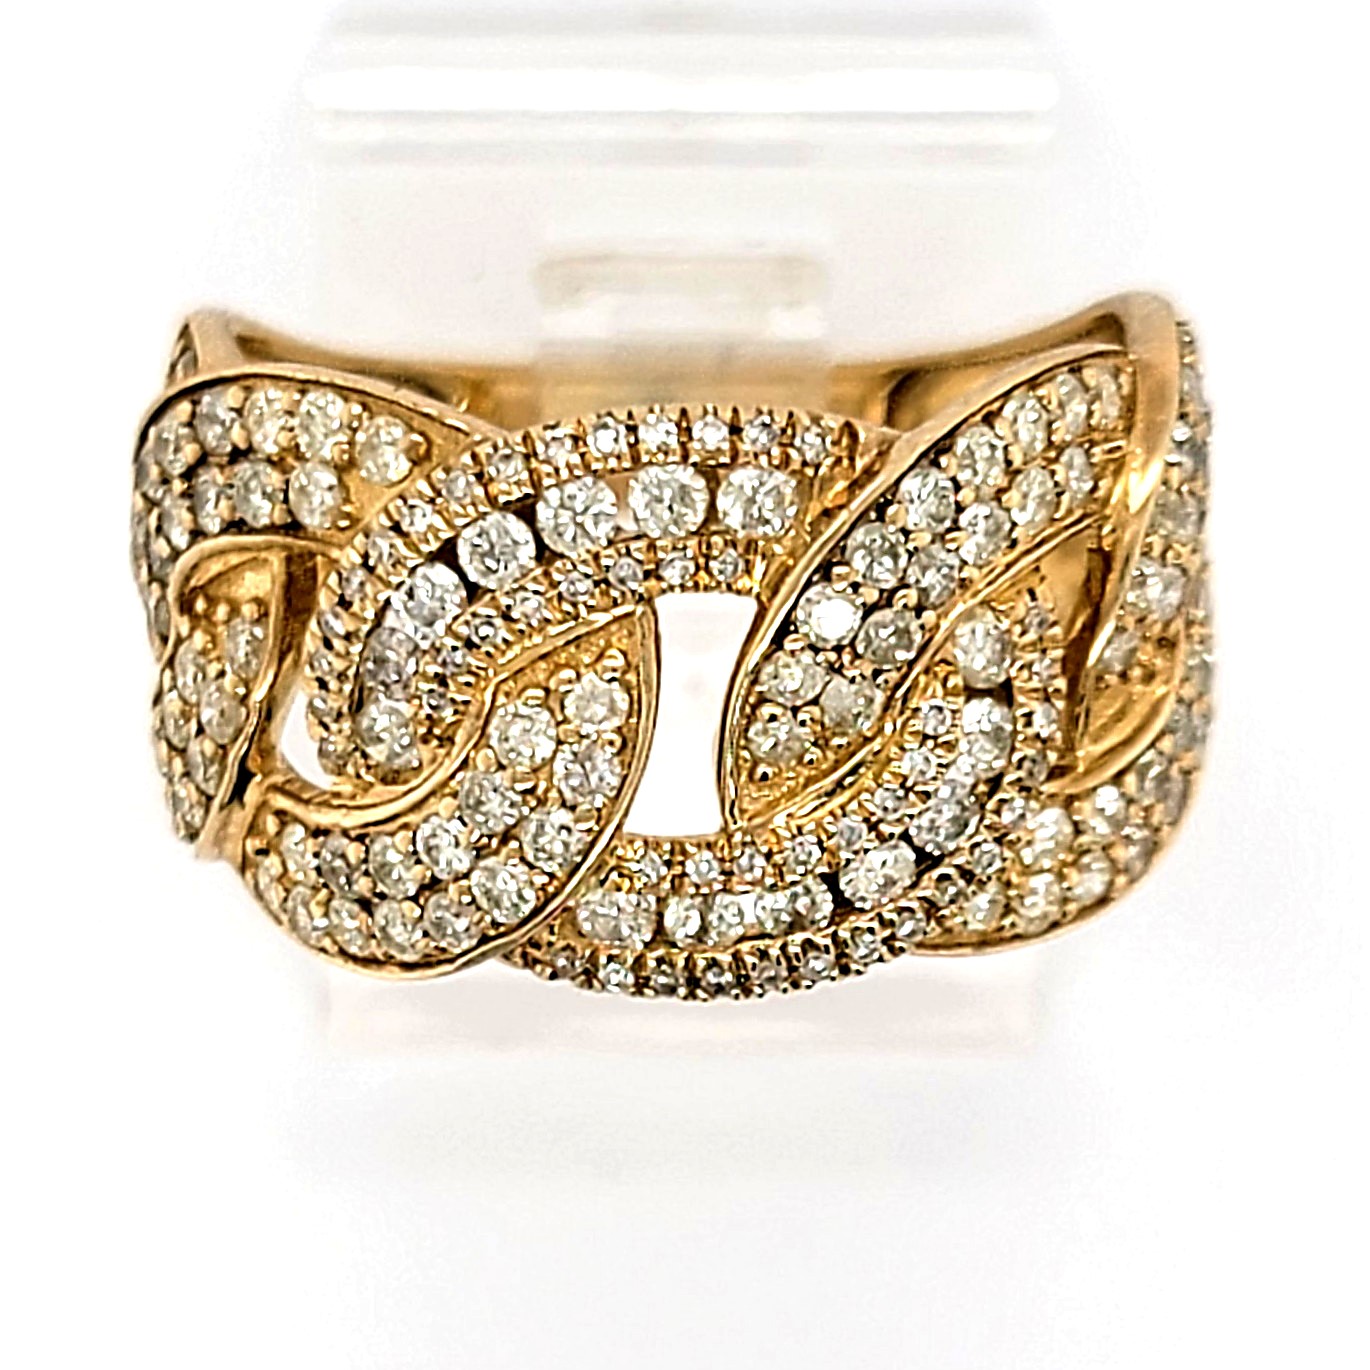 Luxury 14Kt Yellow Gold Diamond Cuban Link Ring - 3 Carat Total Weight –  Gabby Elan